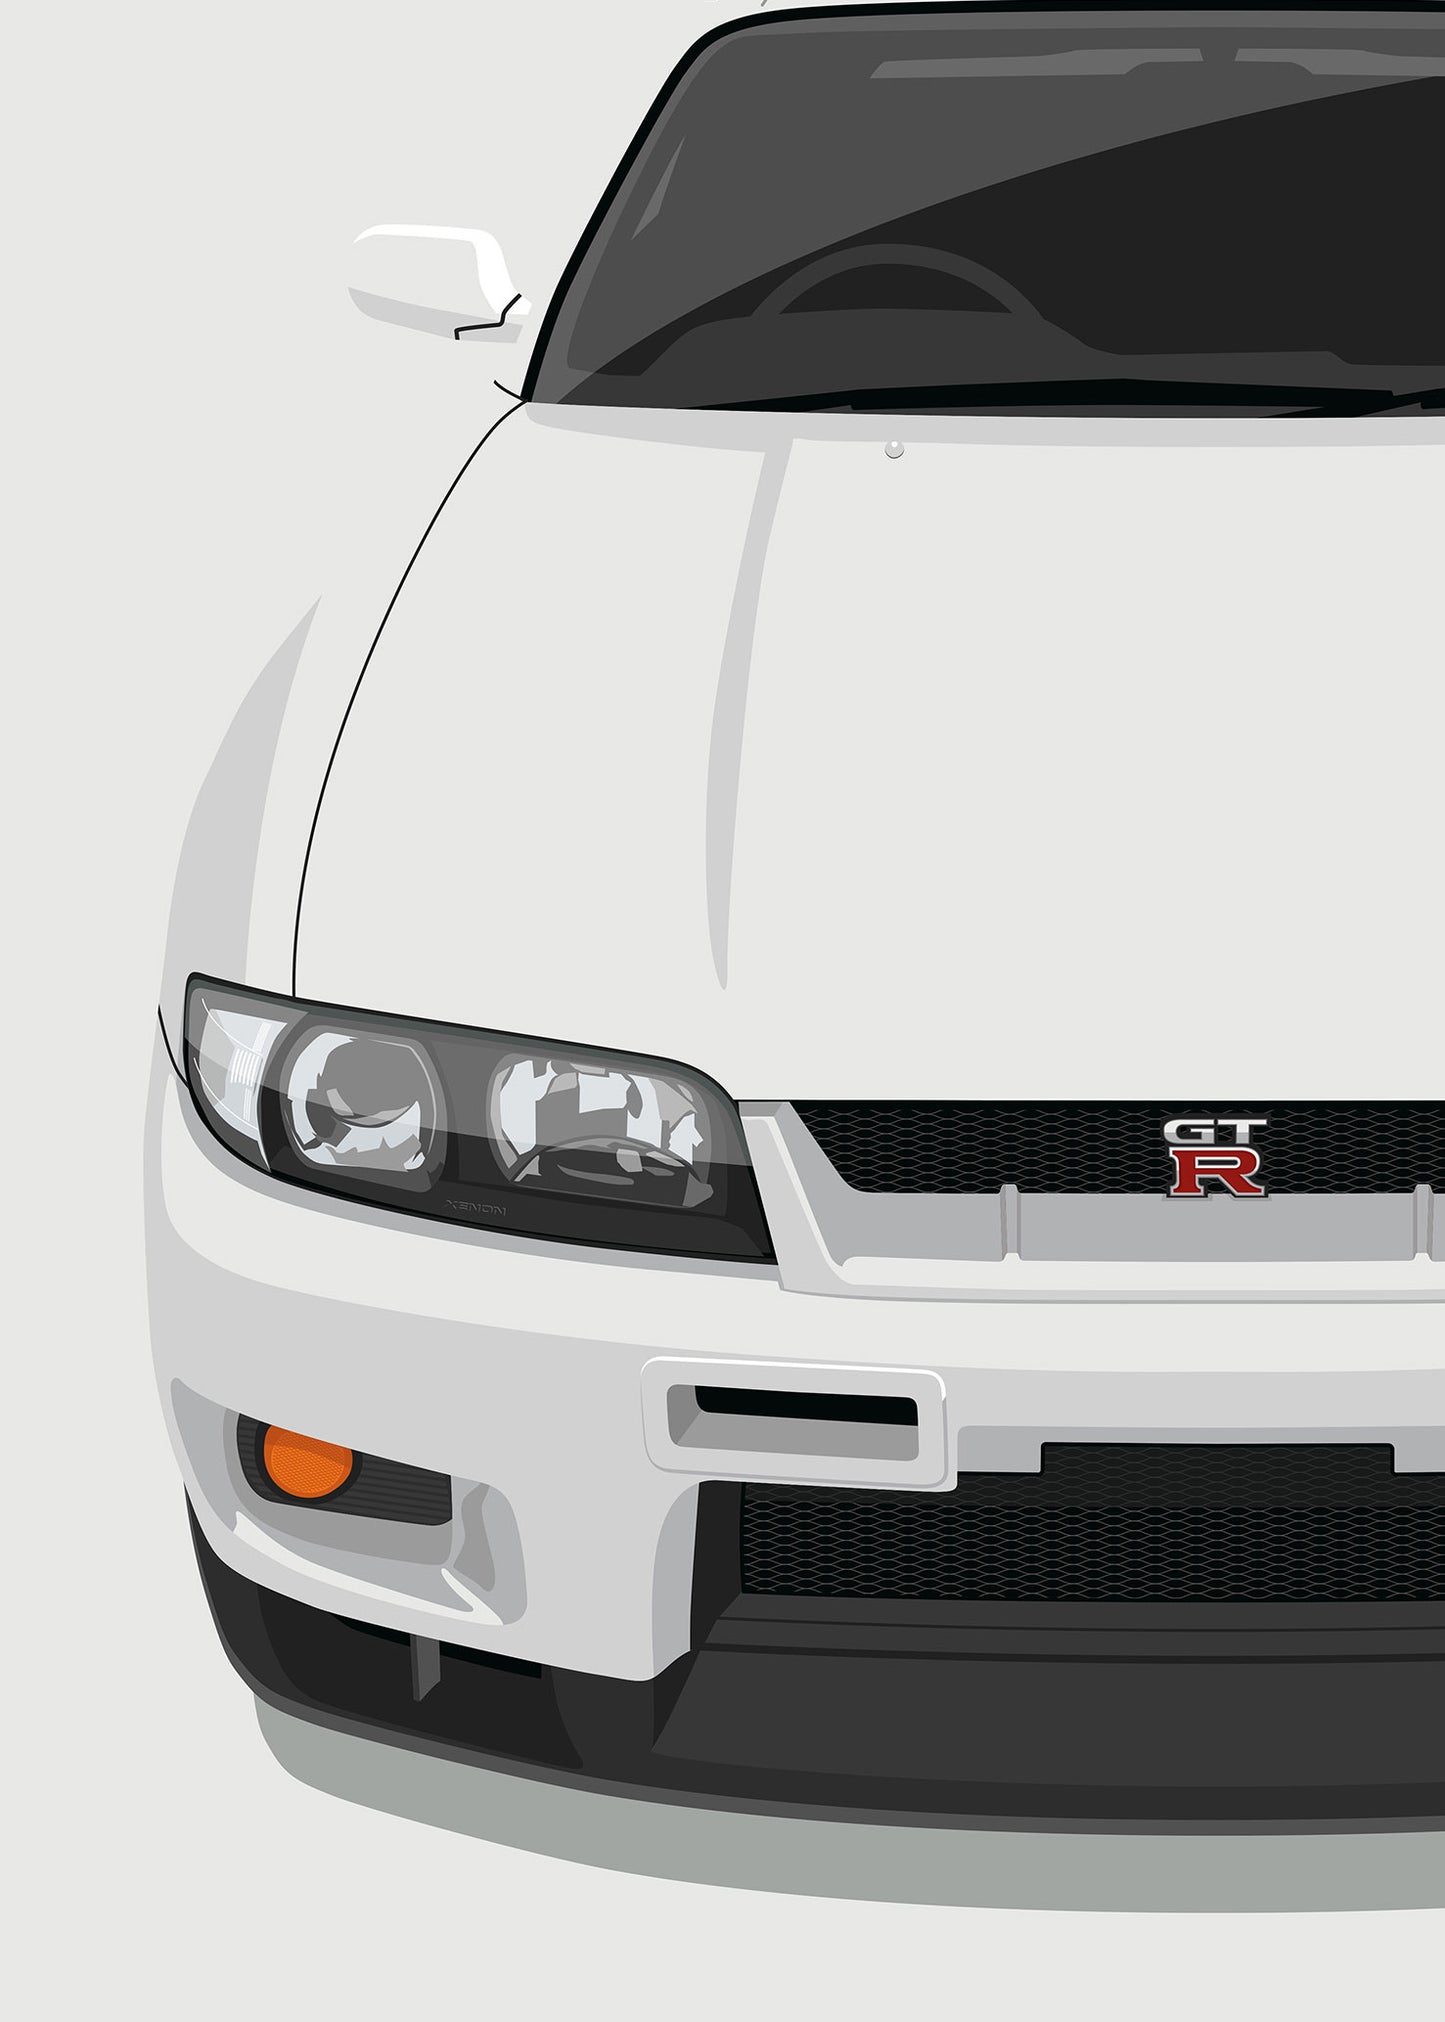 1996 Nissan Skyline R33 GTR V-Spec - White - poster print